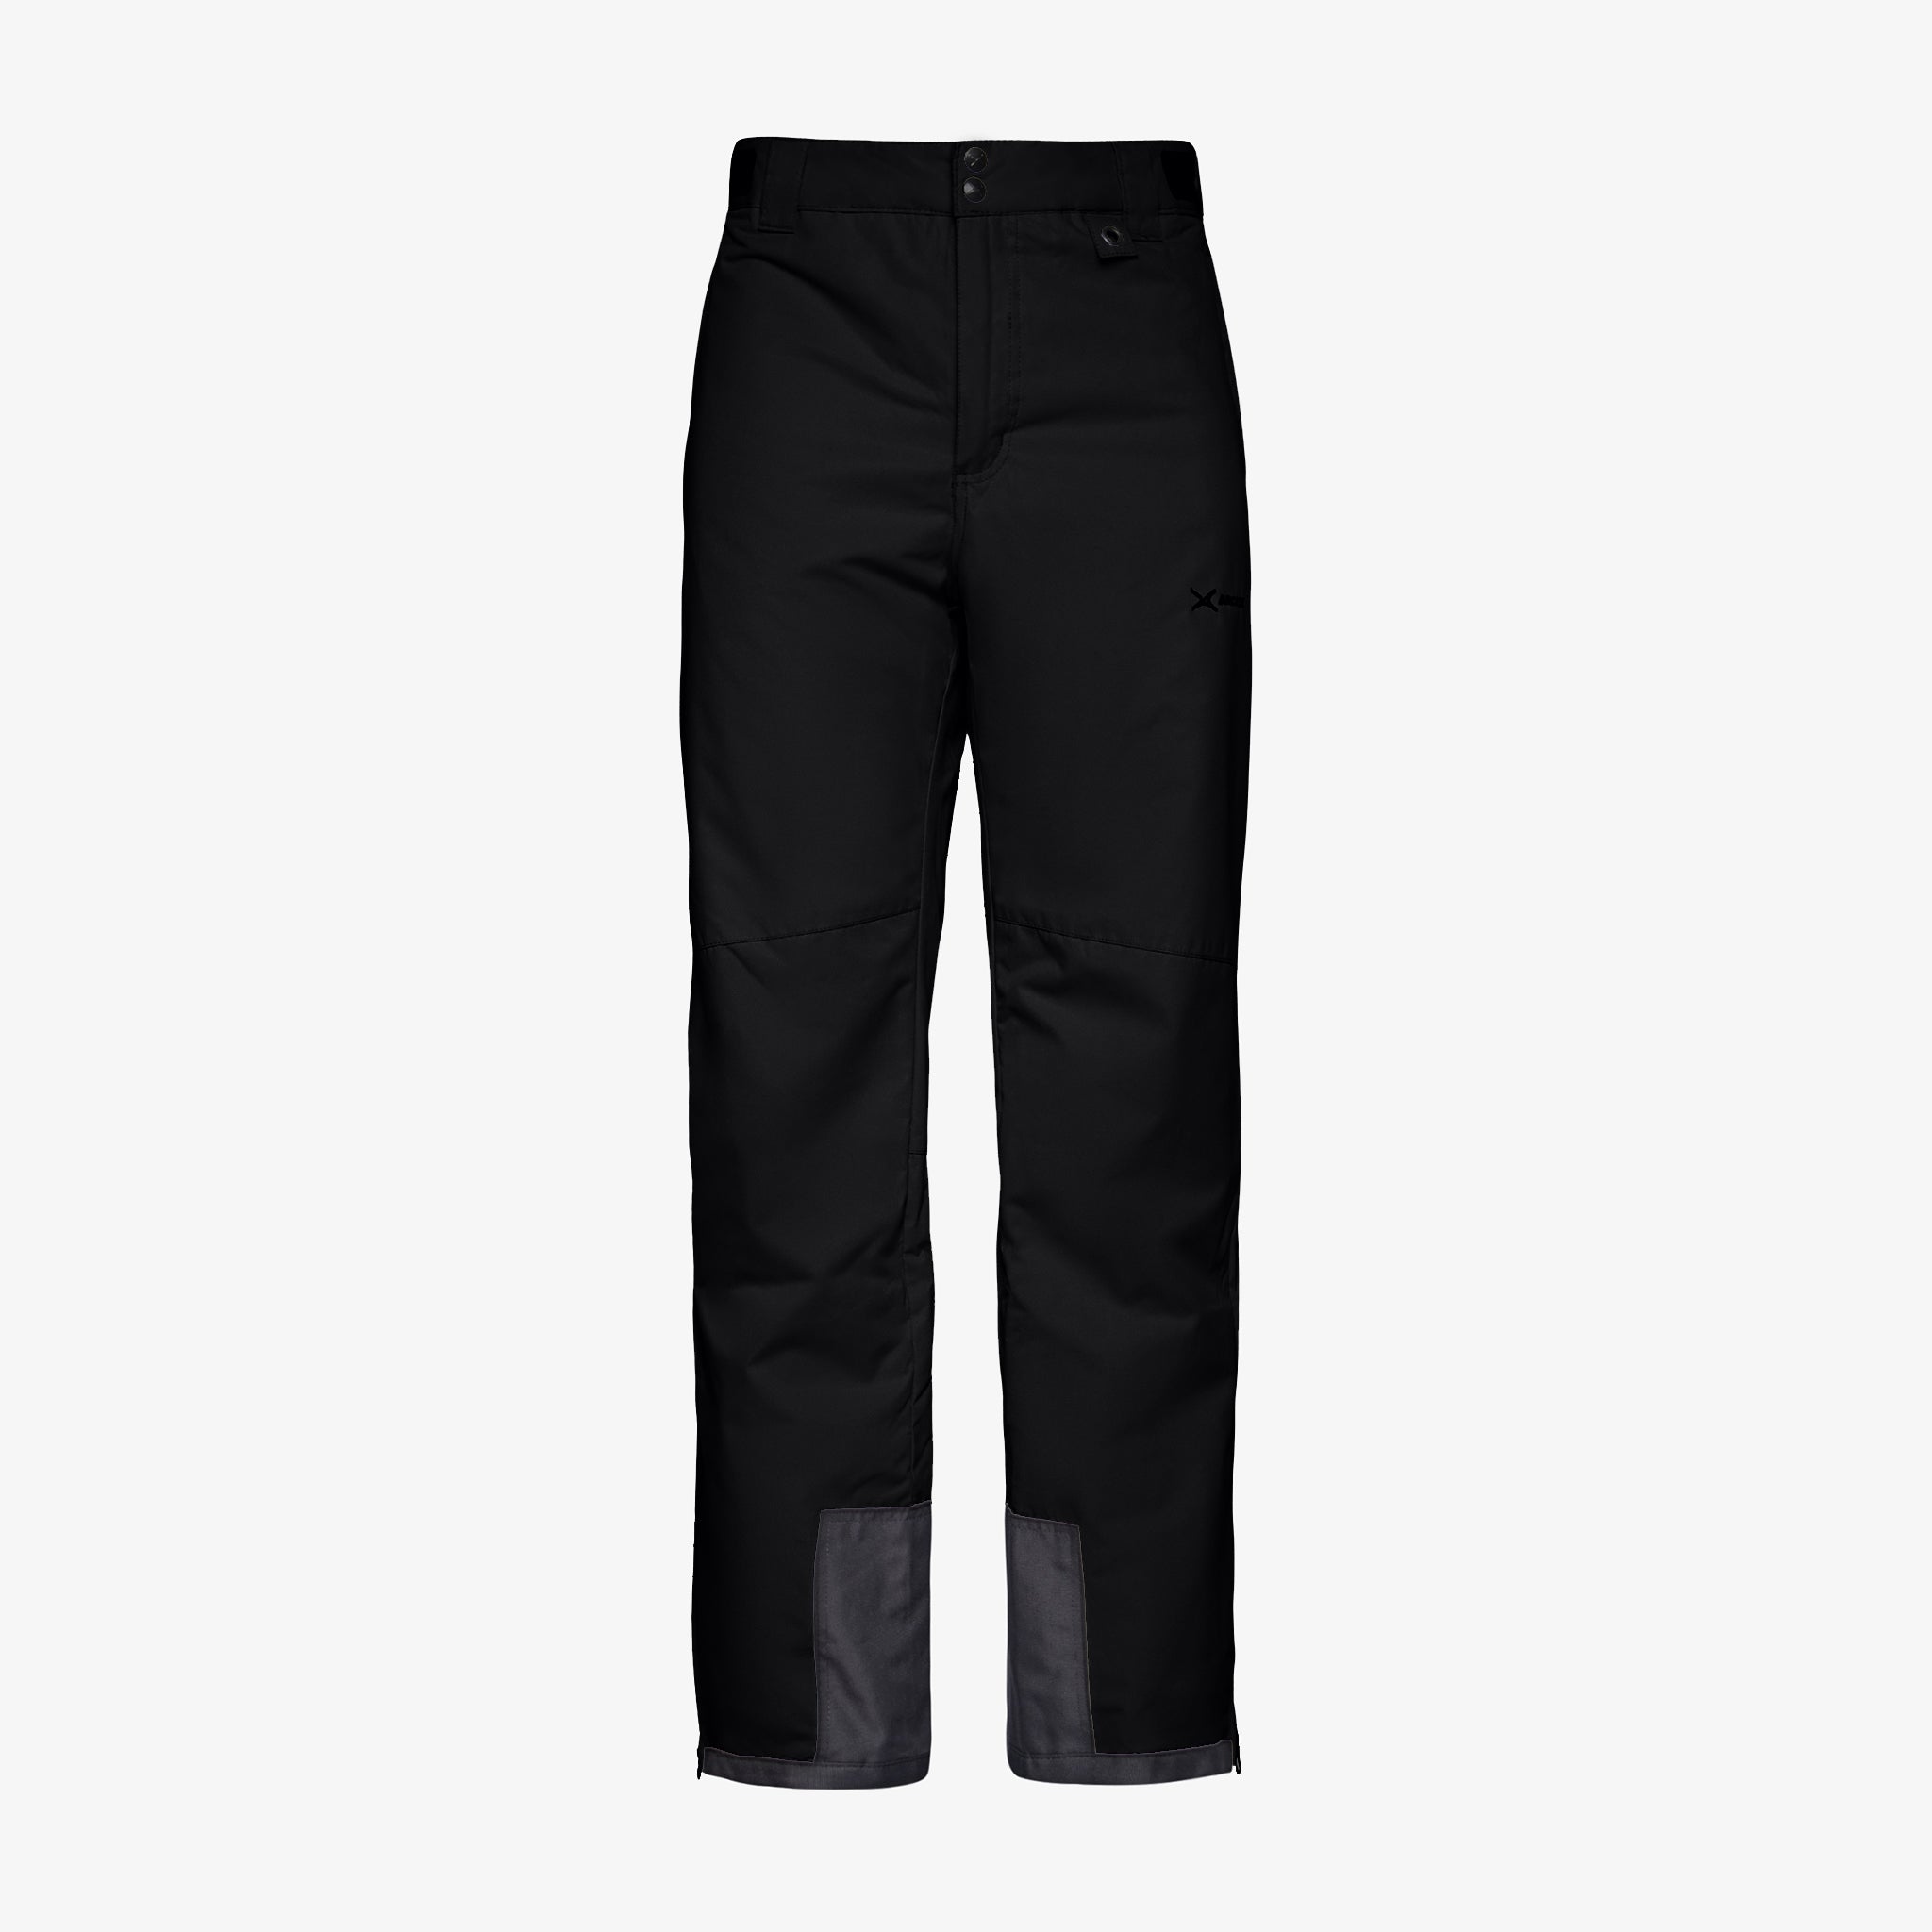 Arctix Men's Essential Snow Pants, Black, X-Large (40-42W 28L)